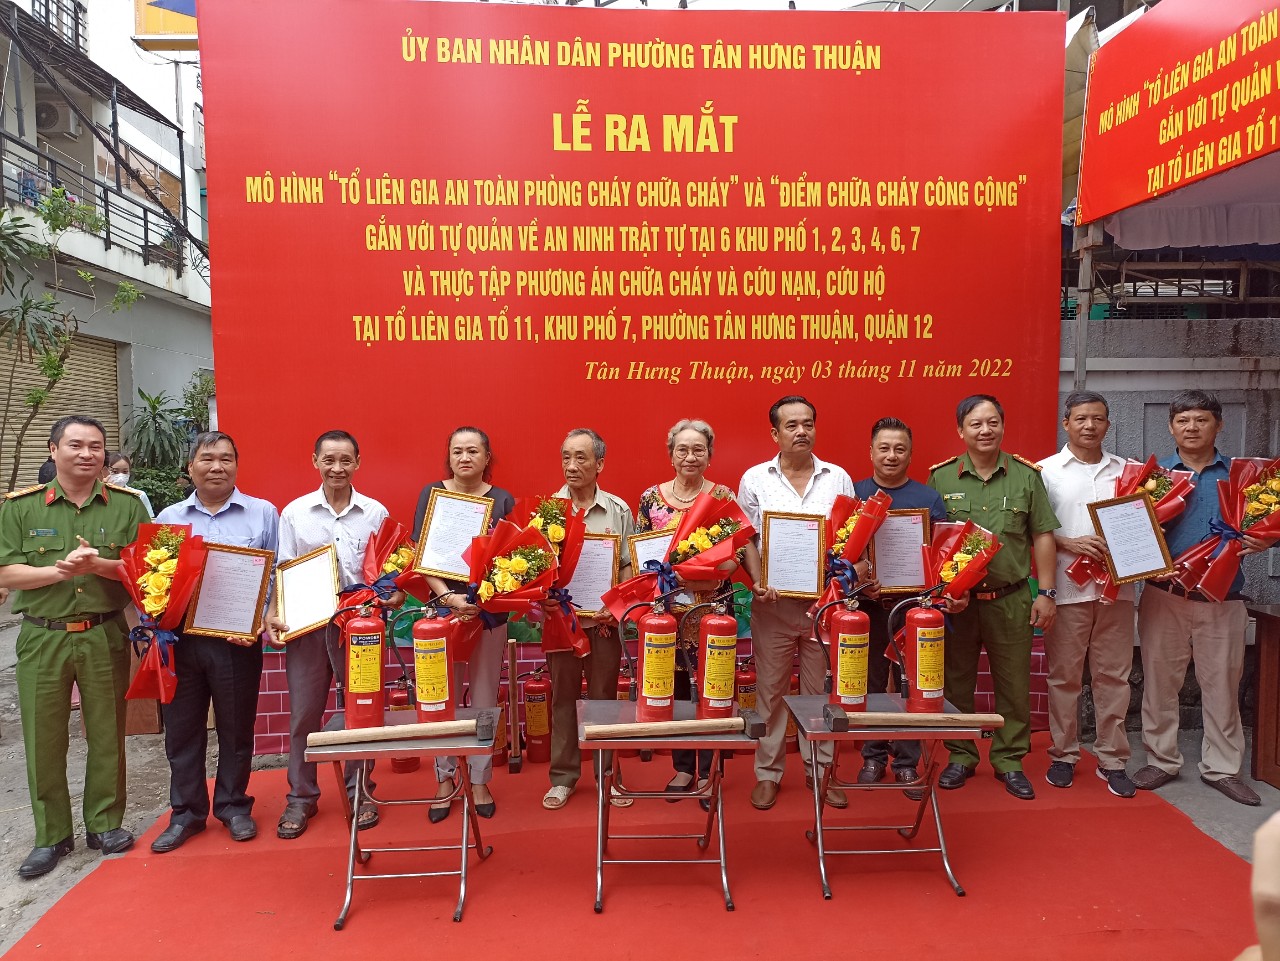 Đẩy mạnh nhân rộng mô hình Tổ liên gia an toàn PCCC và Điểm chữa cháy công  cộng trên địa bàn quận Dương Kinh